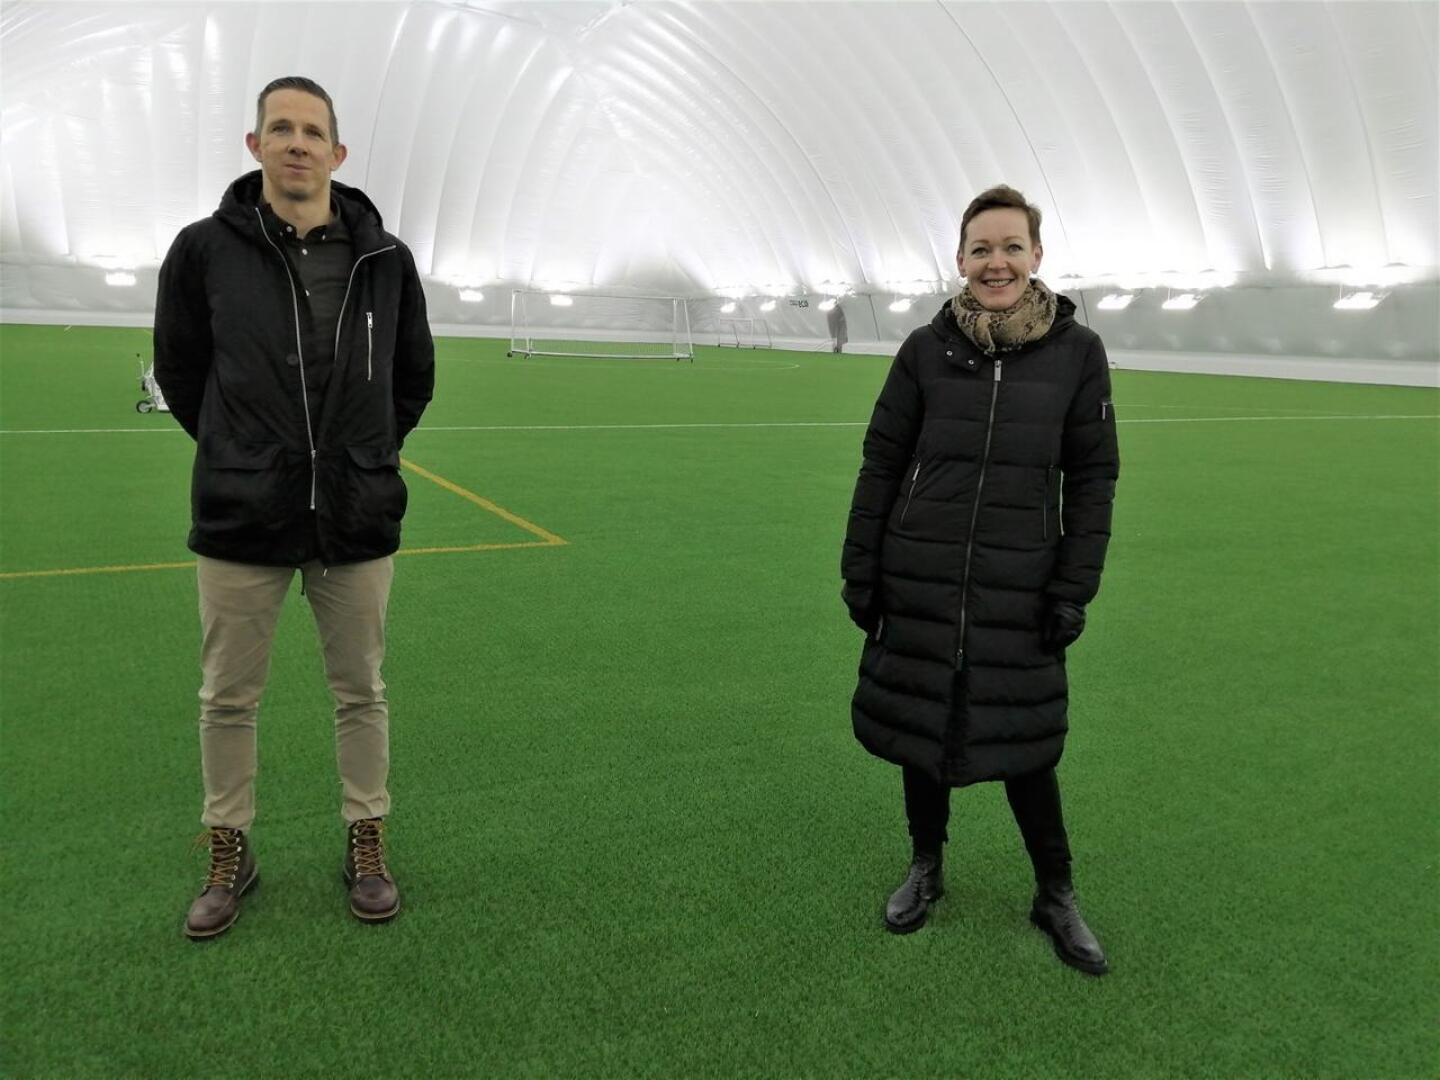 Pontus Backlund ja Monika Eklund-Laurila iloitsevat siitä, millaisia mahdollisuuksia Sursikin liikuntapuiston uusi jalkapallohalli tarjoaa. 